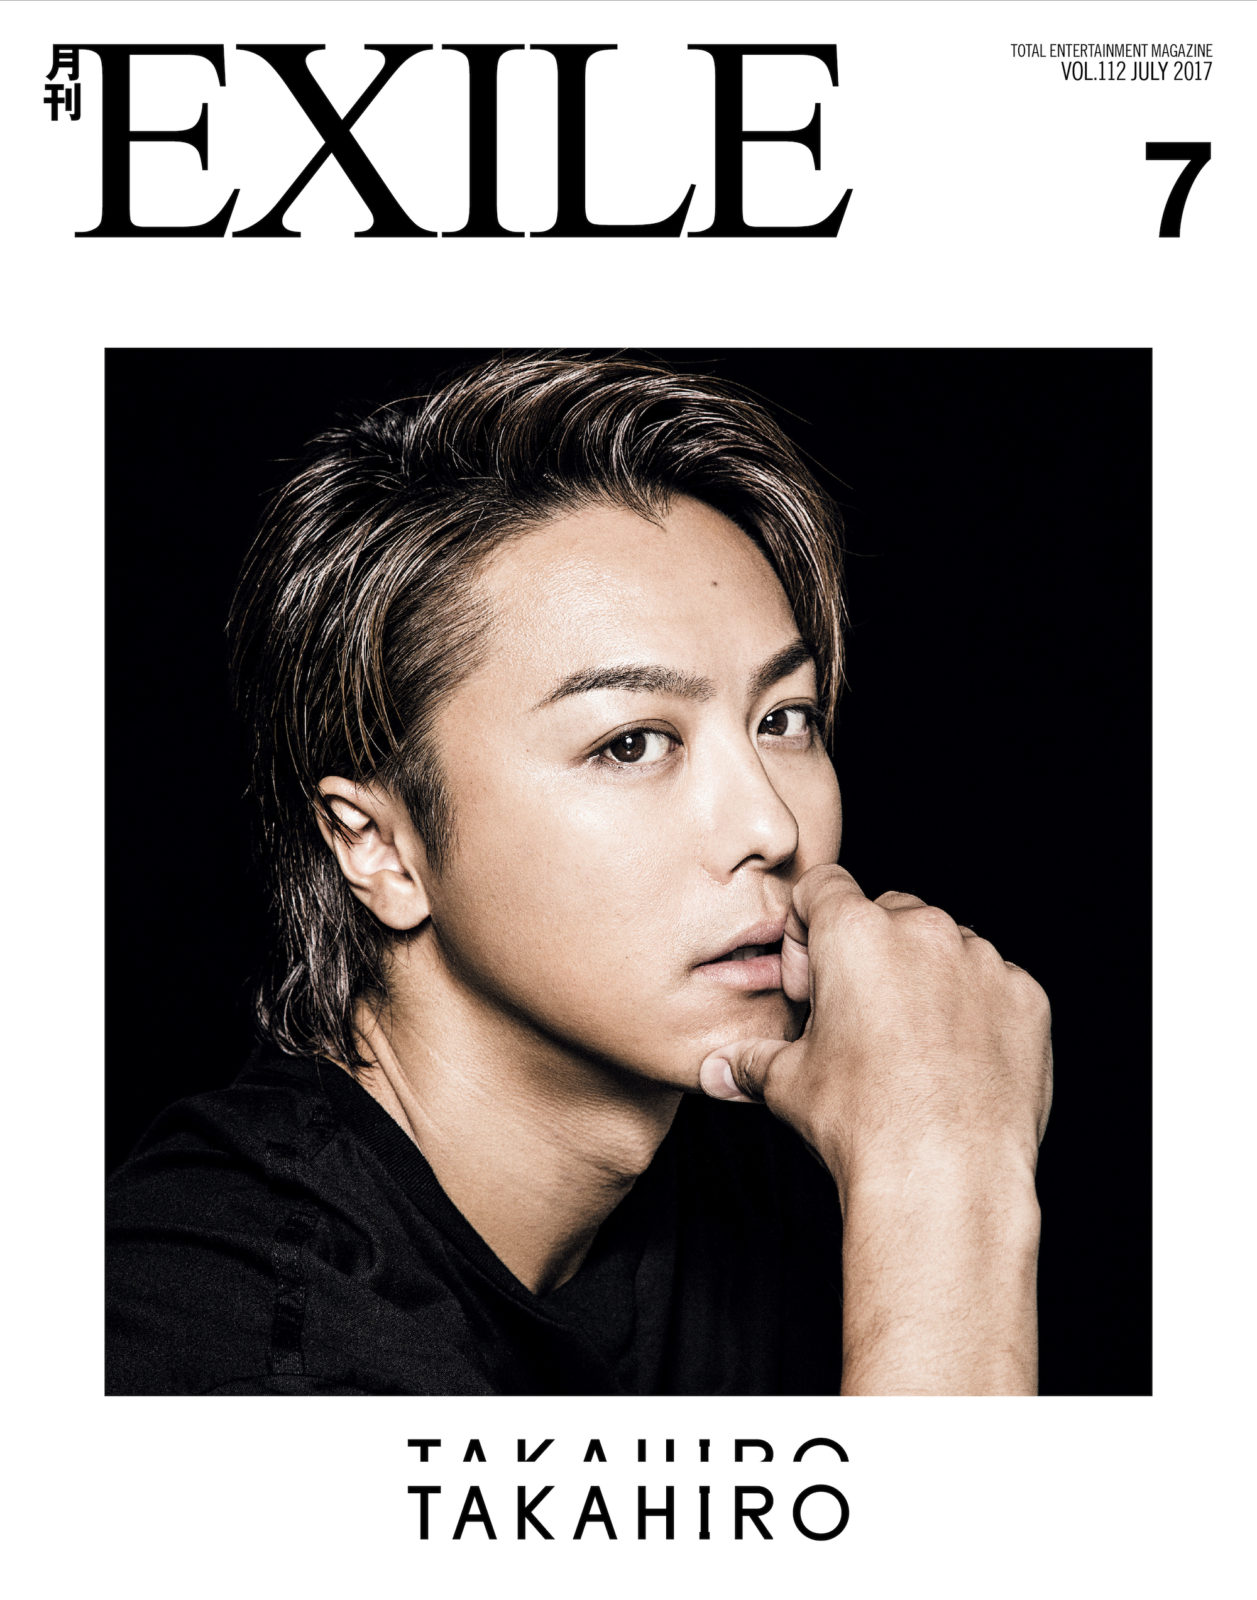 Exile Takahiro 月刊exile 約3年ぶりとなる単独カバーで ファンからは かっこいい ヤバい の声殺到 17年5月29日 エキサイトニュース